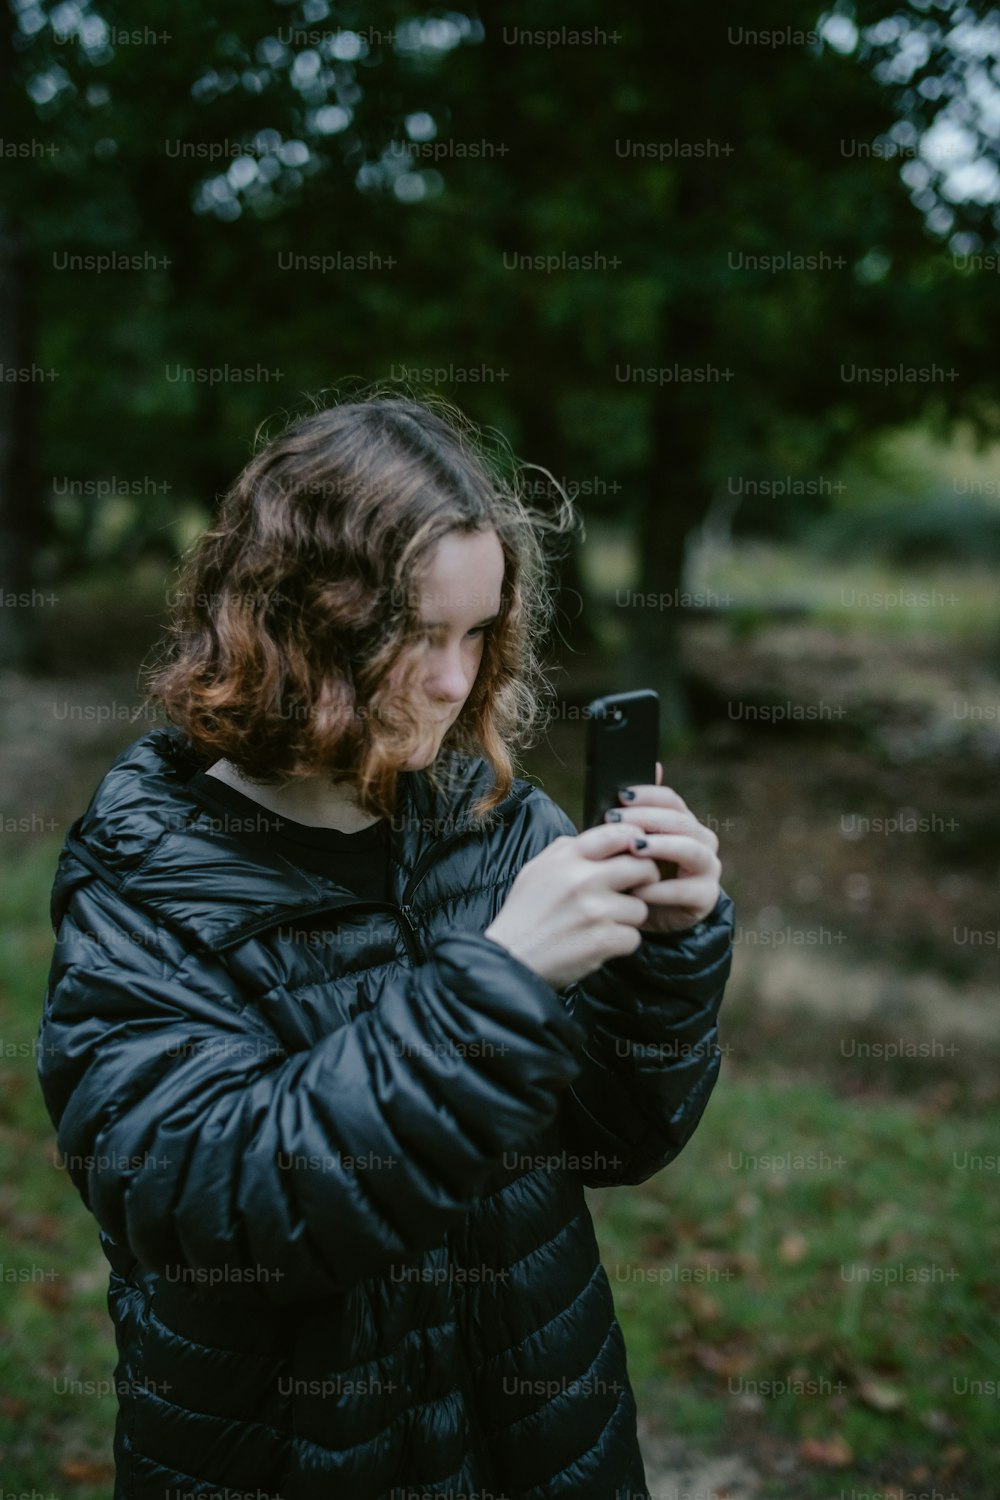 Una mujer con una chaqueta negra mirando su teléfono celular